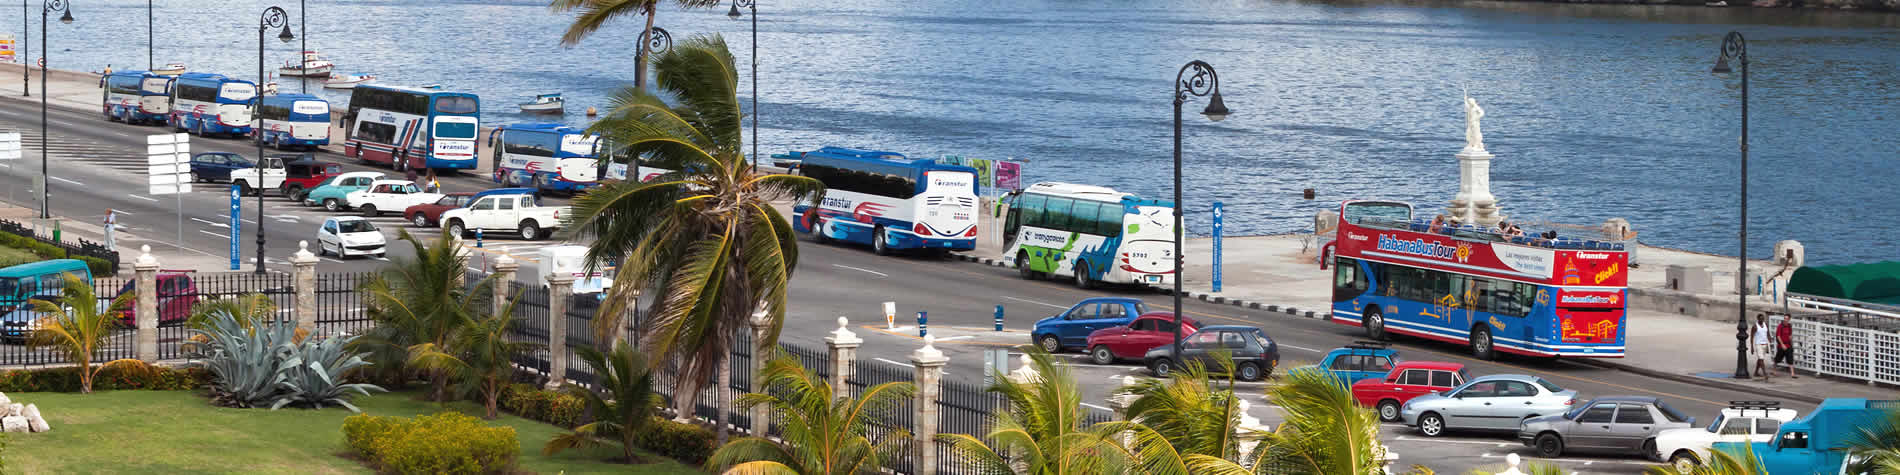 View of transfer buses in Havana